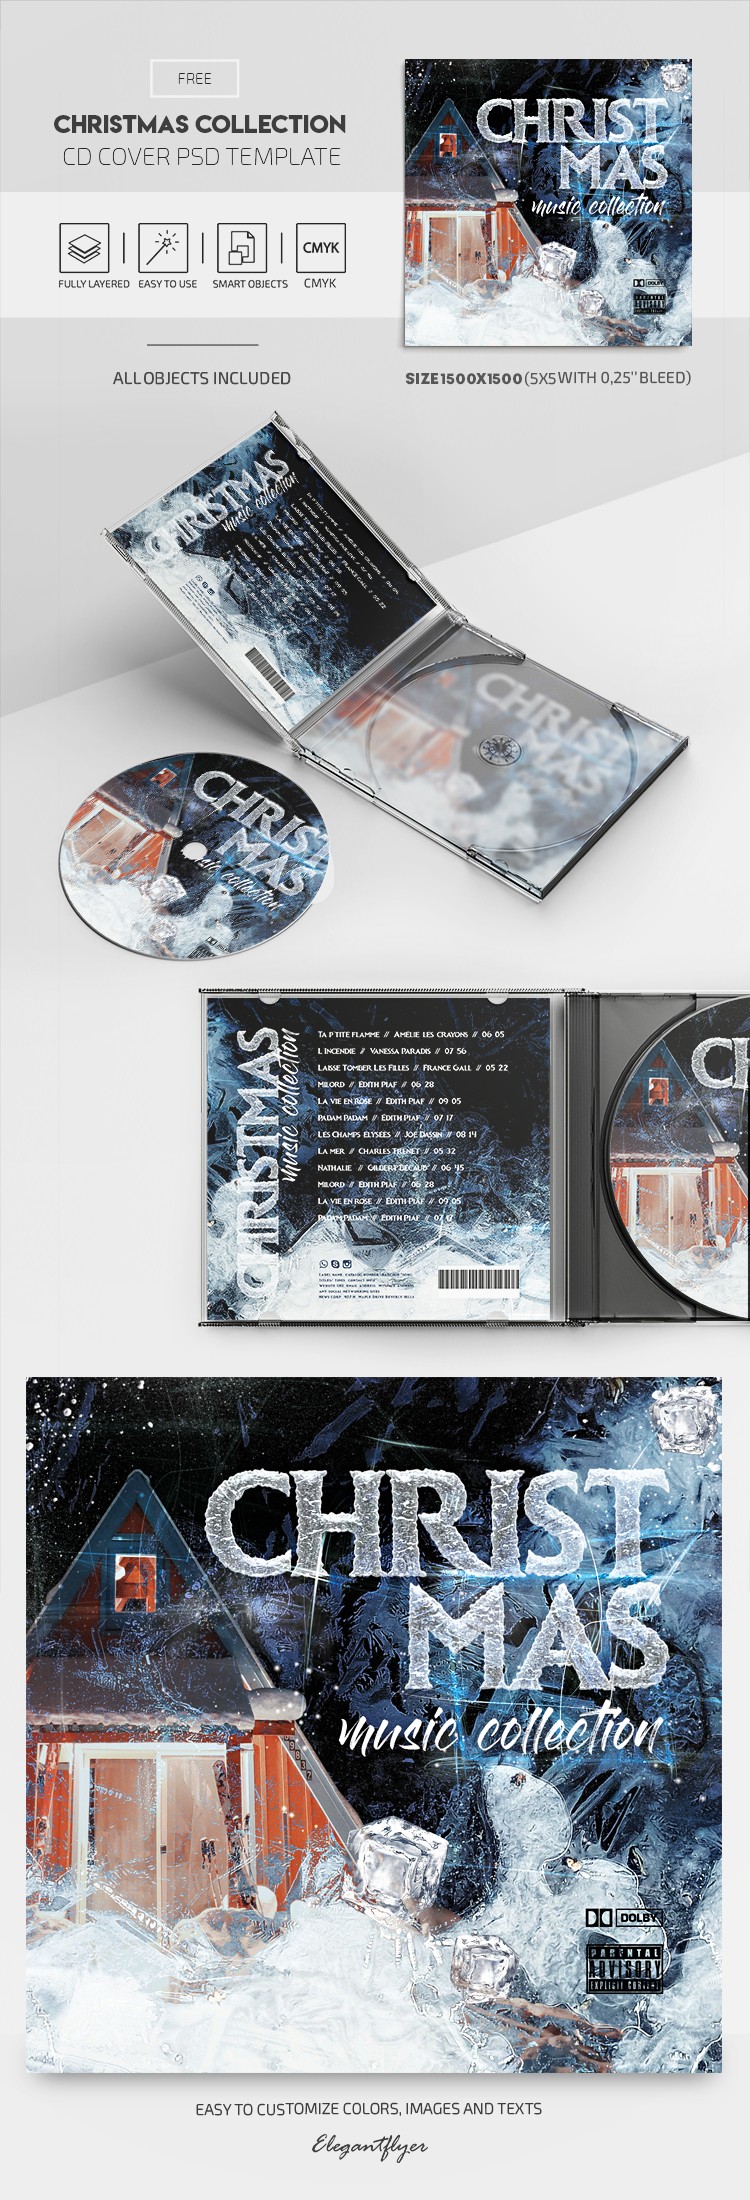 Copertina del CD della Collezione di Natale by ElegantFlyer